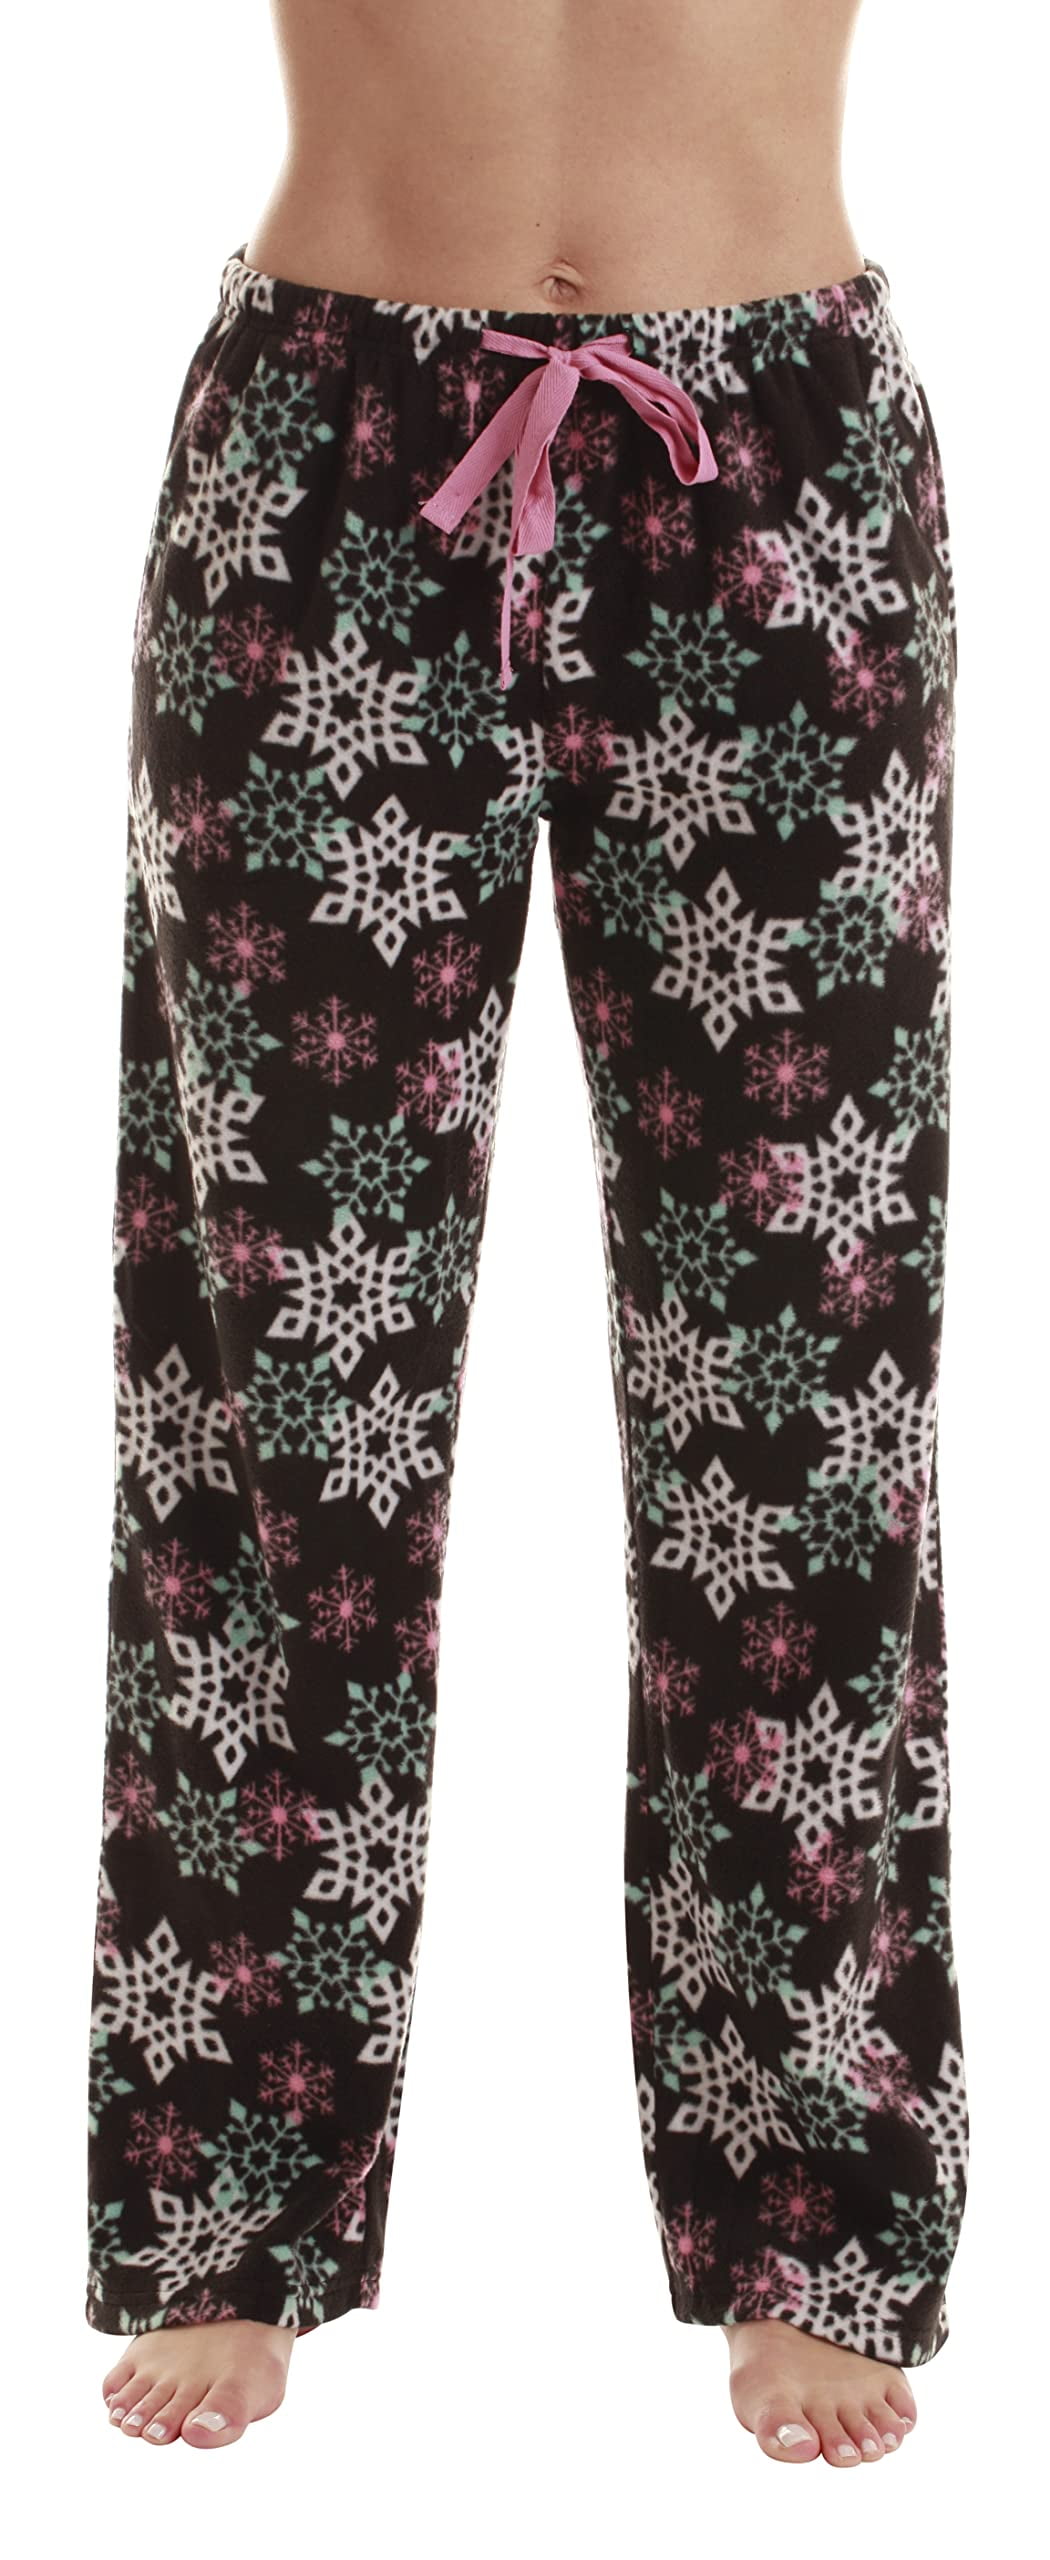 Just Love Fleece Pajama Pants for Women Sleepwear PJs. (Black - Winter ...